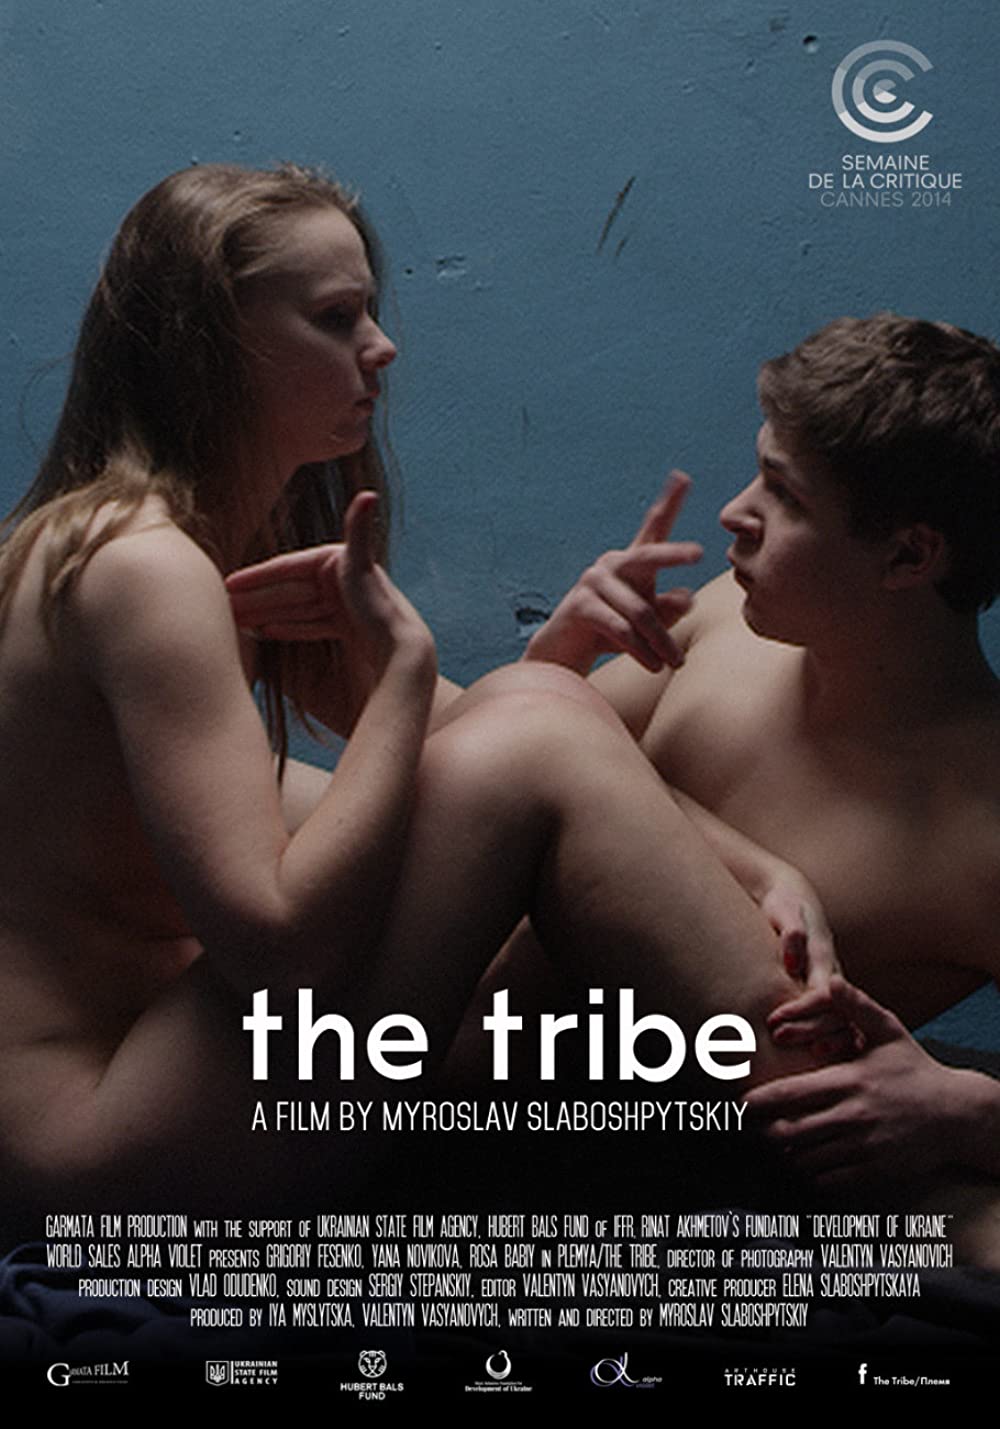 Filmbeschreibung zu The Tribe (OV)